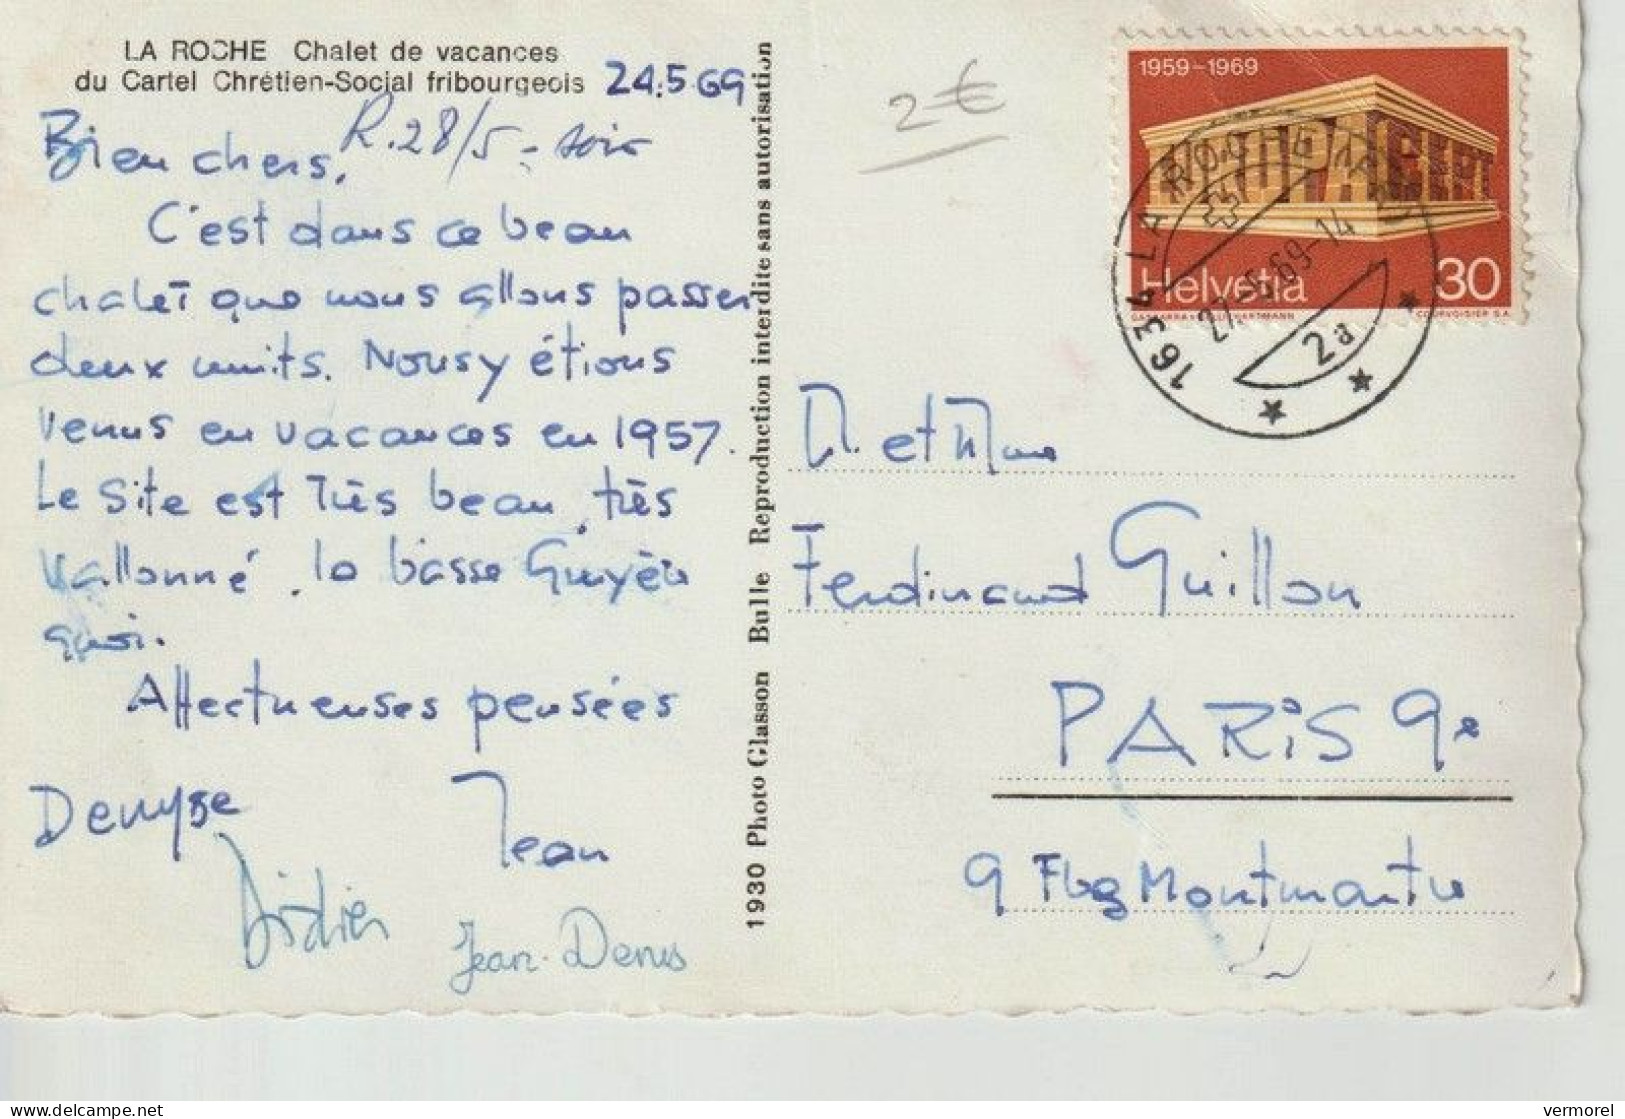 LA ROCHE Chalet De Vacances Du Cartel Chrétien Social Fribourgeois-22-06-1969 - La Roche